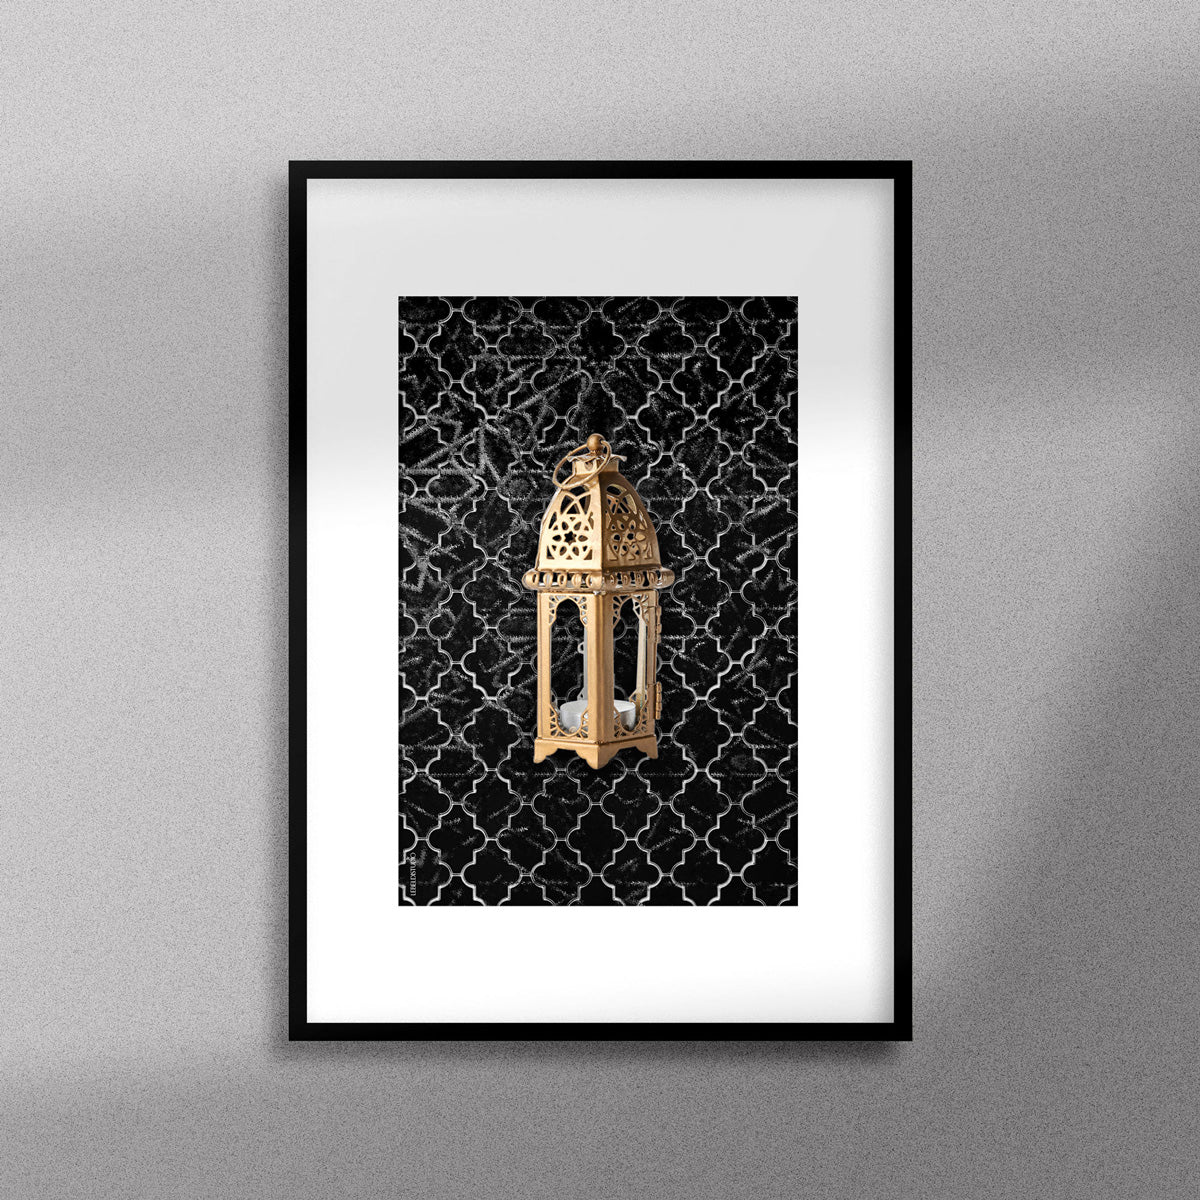 Tableau décoratif  d'une lanterne traditionnelle marocaine en dorée sur un fond de zellige marocain noir, encadré dans un cadre noir - Format A3.